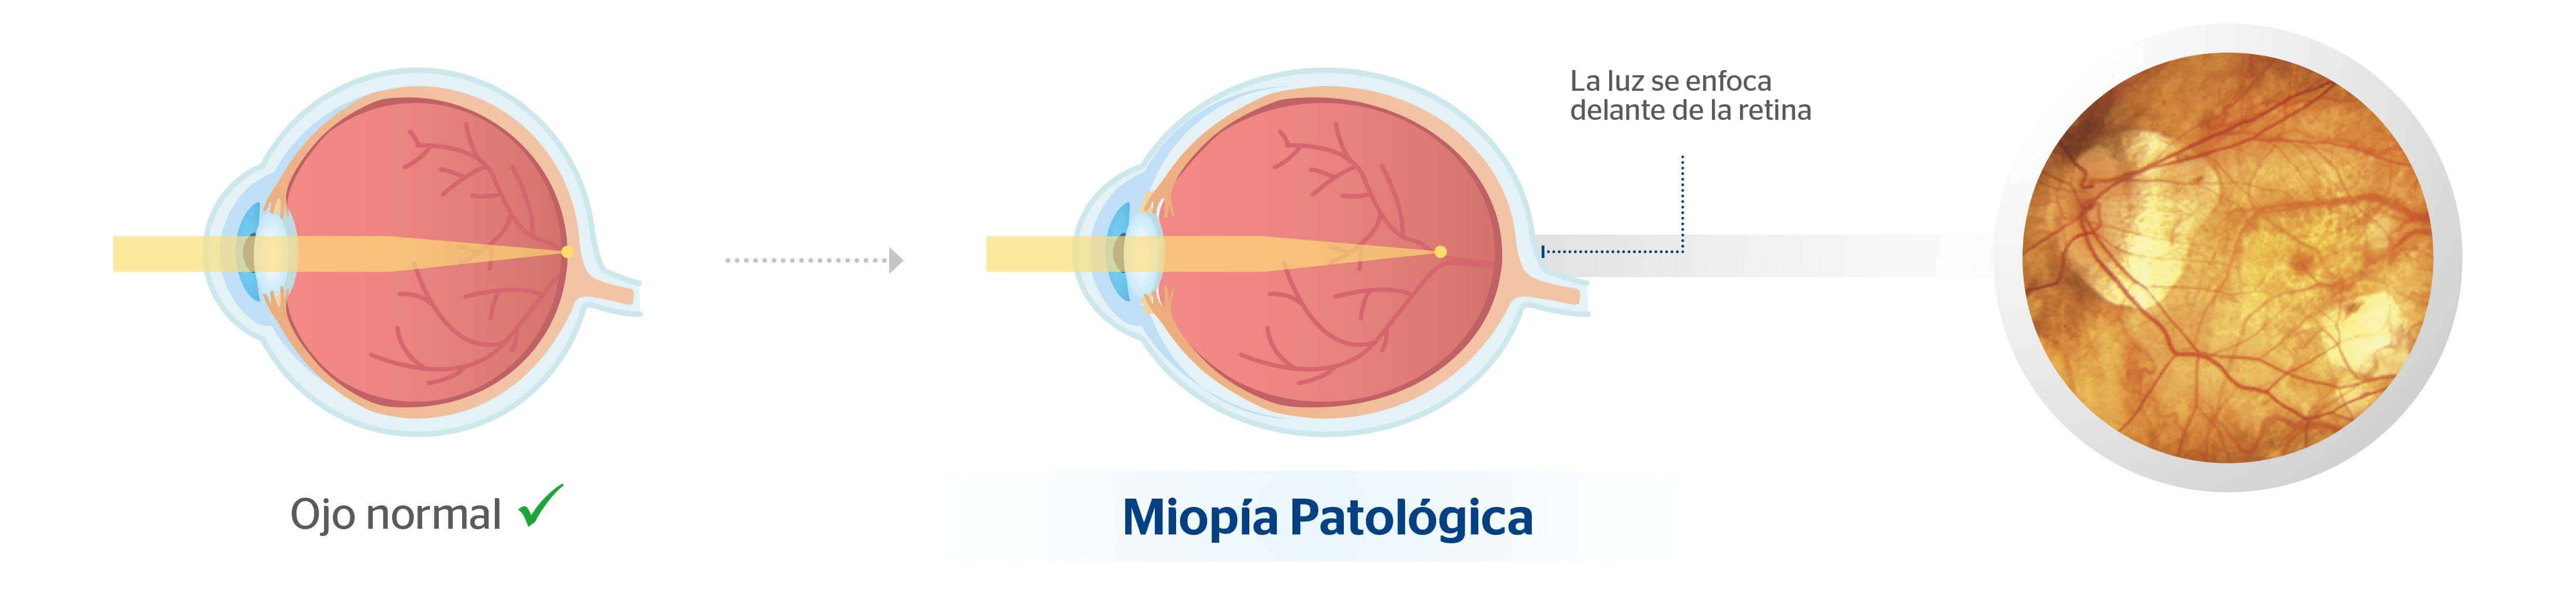 miopia magna fondo de ojo